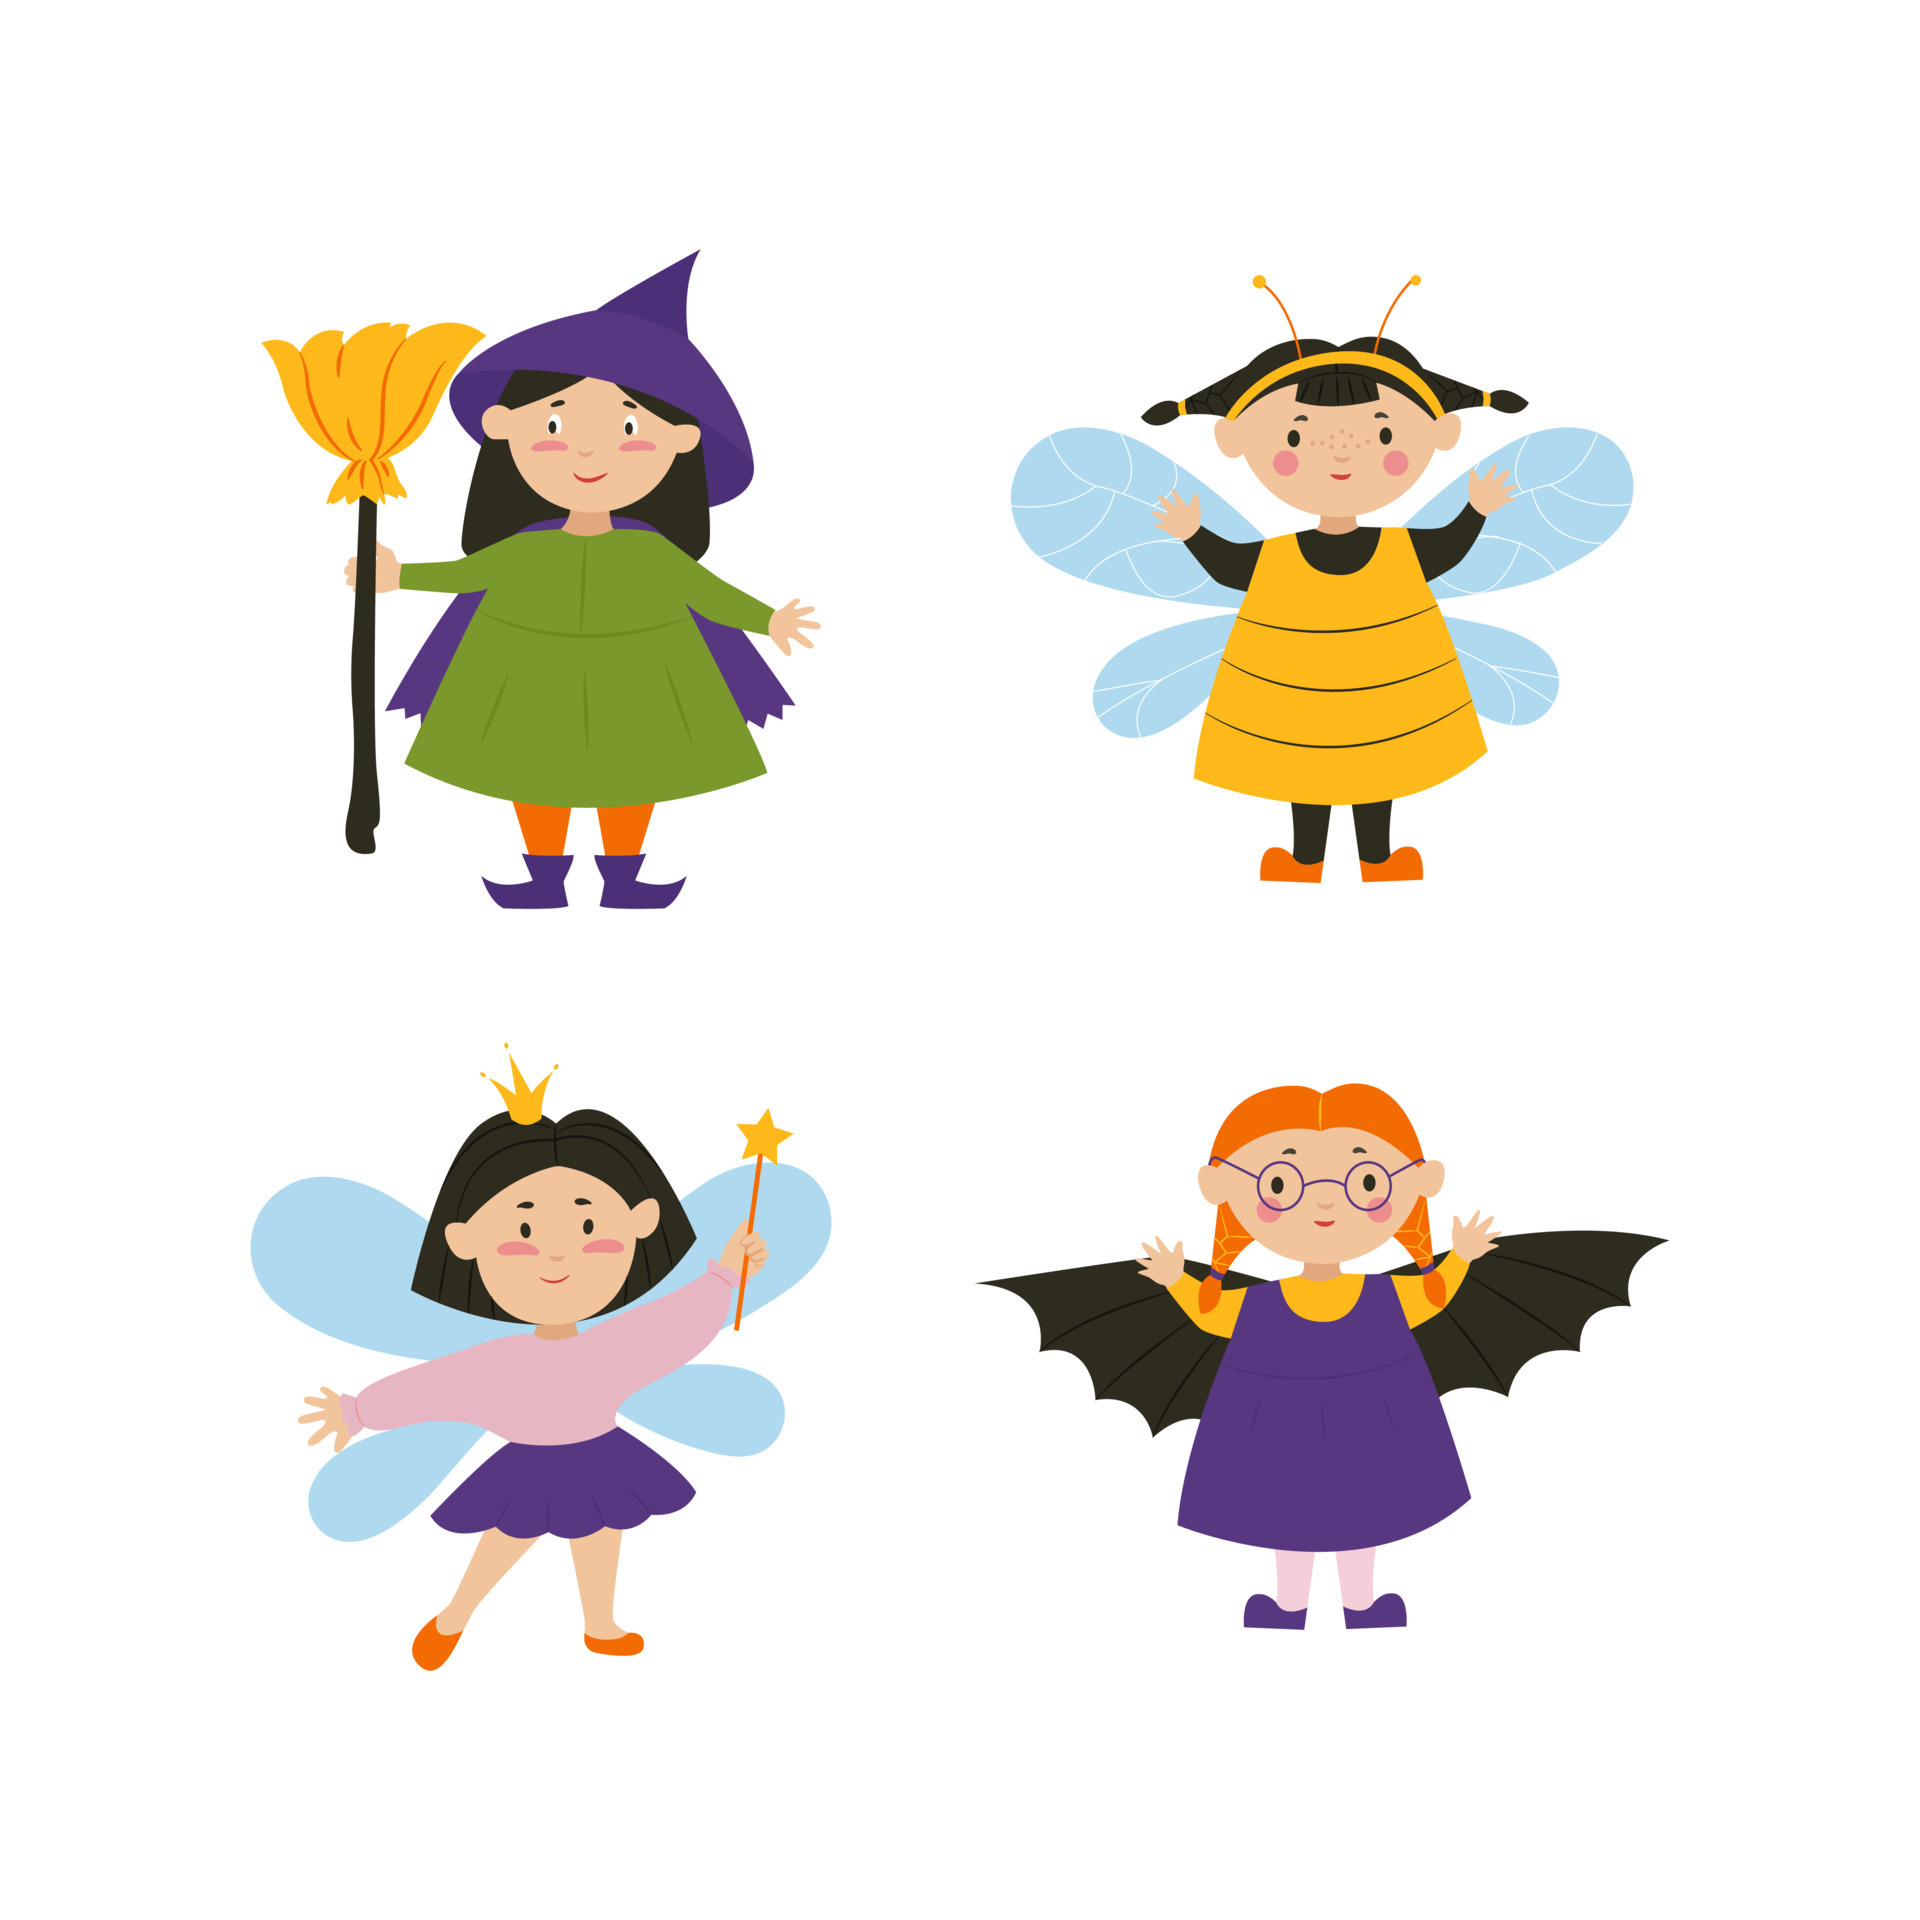 meninas bonitas de halloween em fantasias de morcego, abelha e bruxa.  personagens do dia das bruxas. ilustração vetorial em estilo simples.  10818892 Vetor no Vecteezy